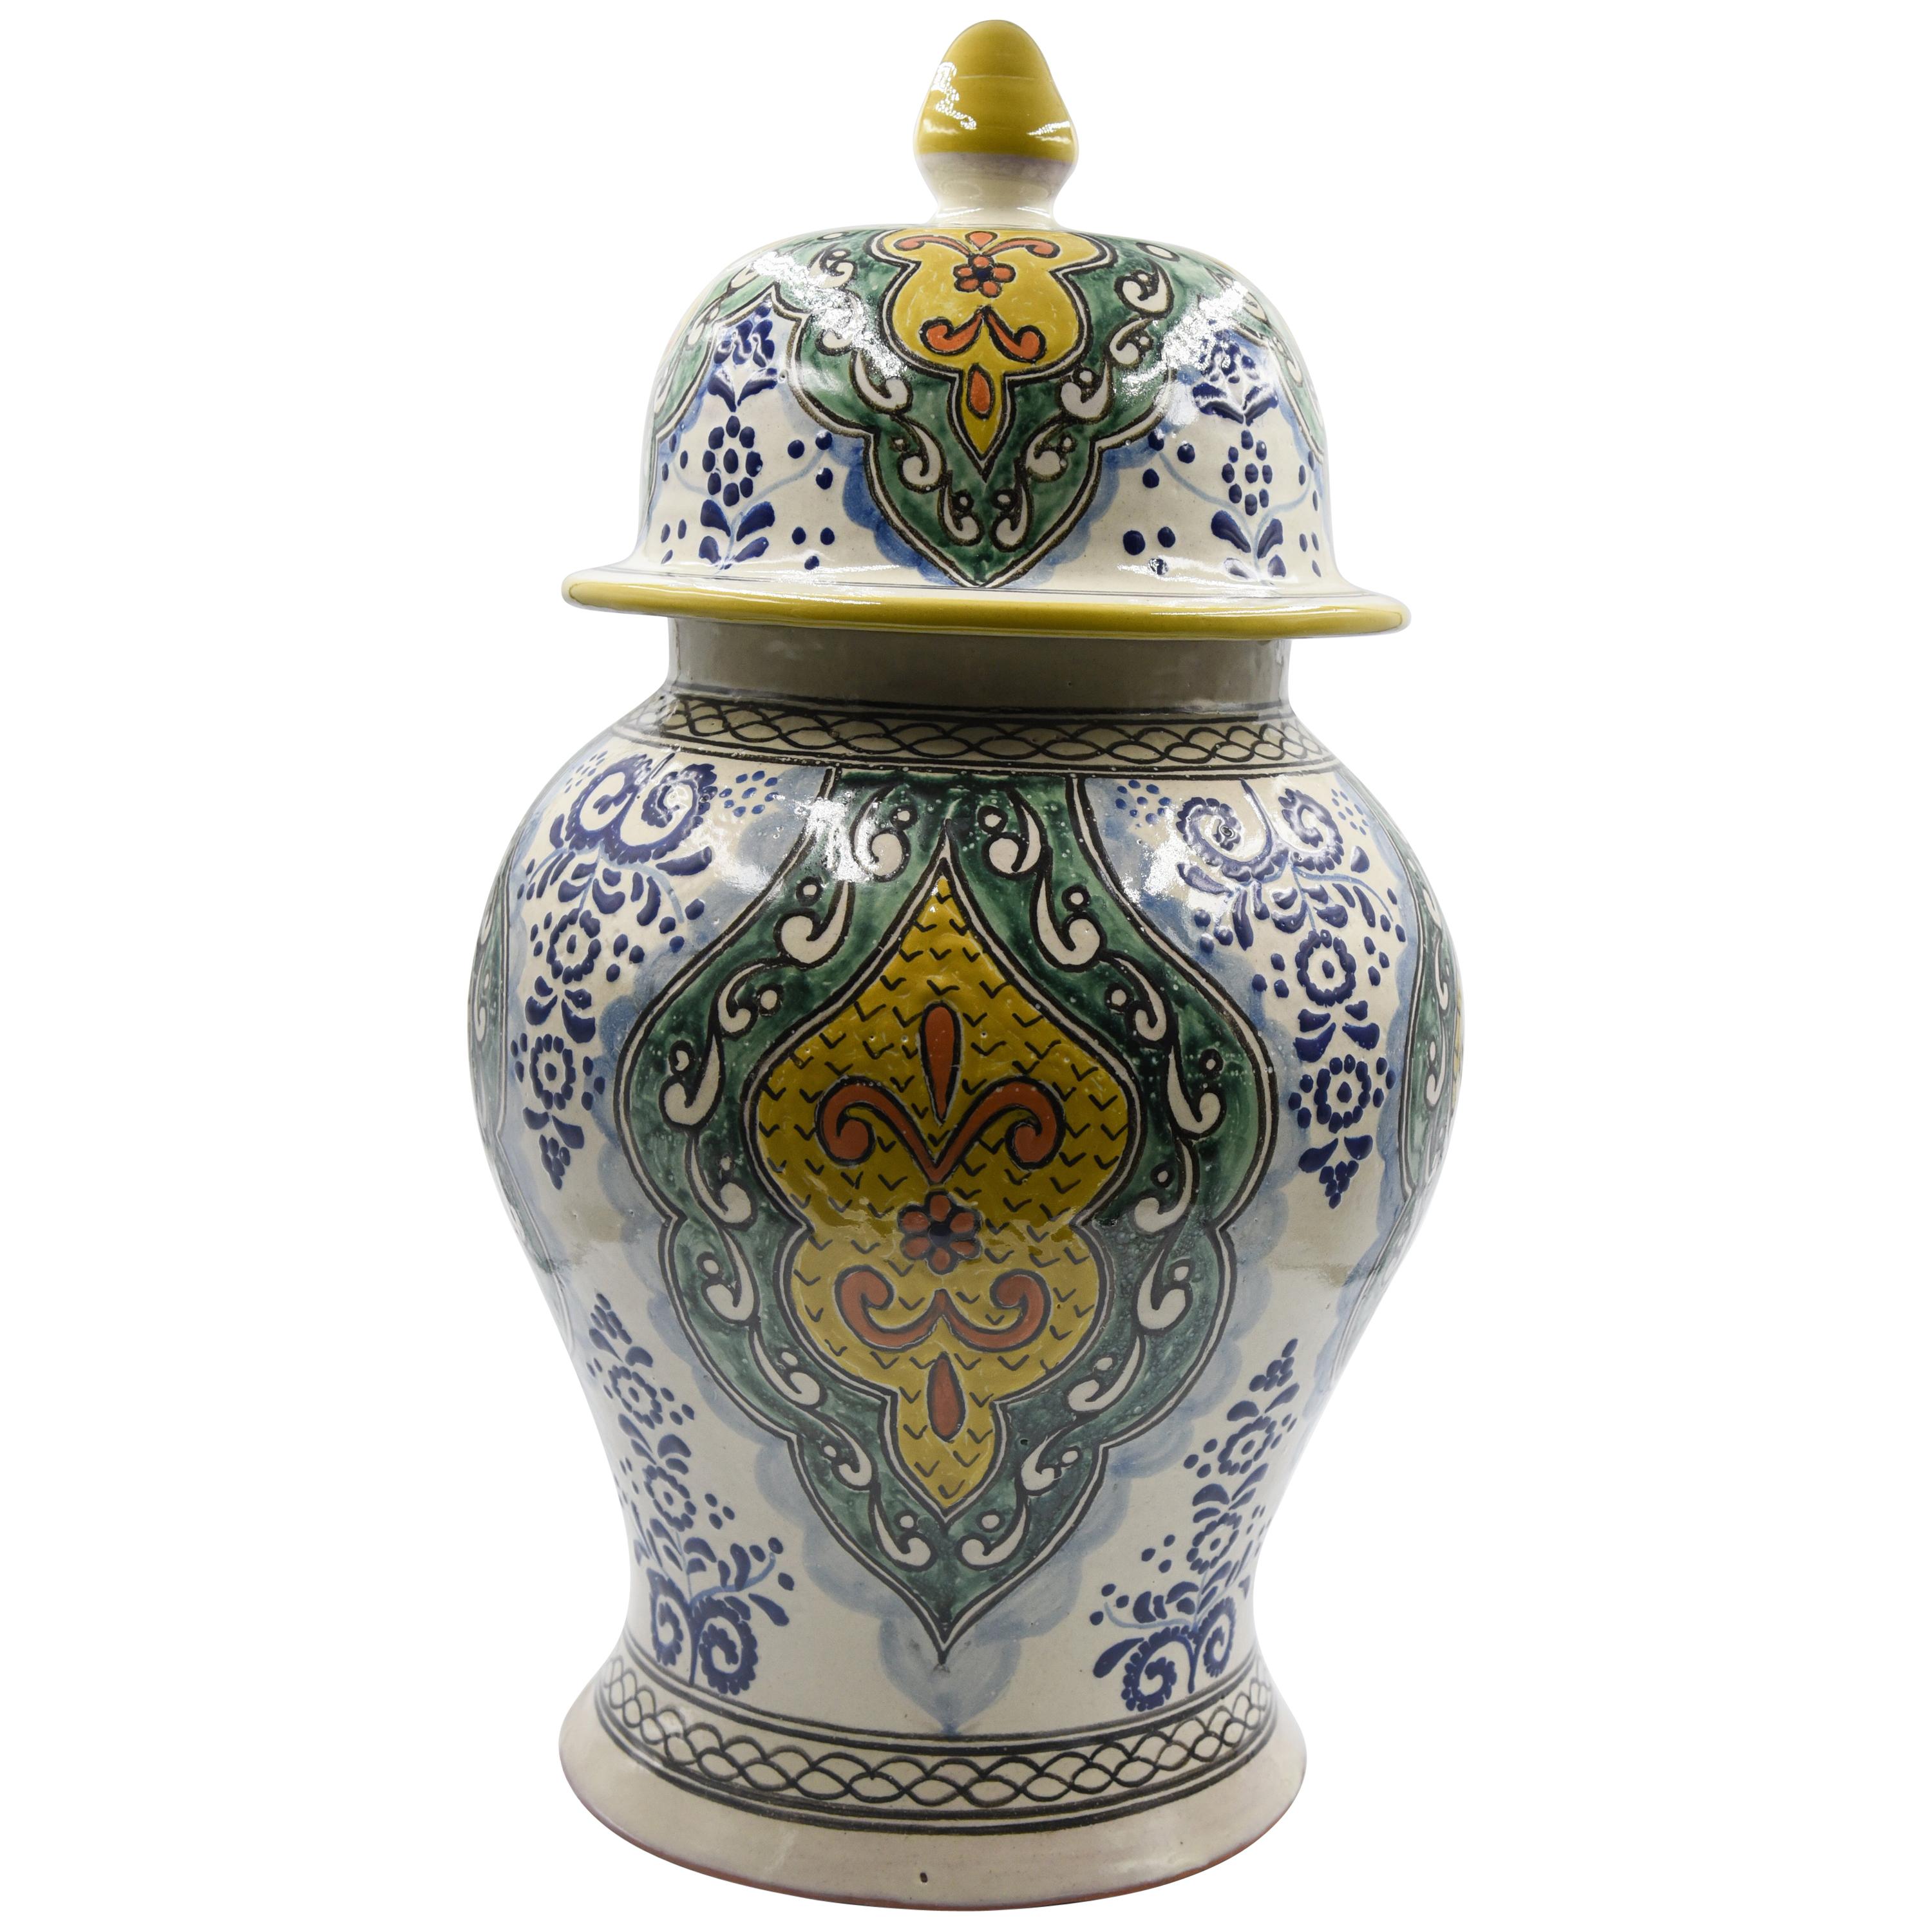 Authentische Talavera dekorative Vase Volkskunst Gefäß mexikanischen Keramik blau gelb